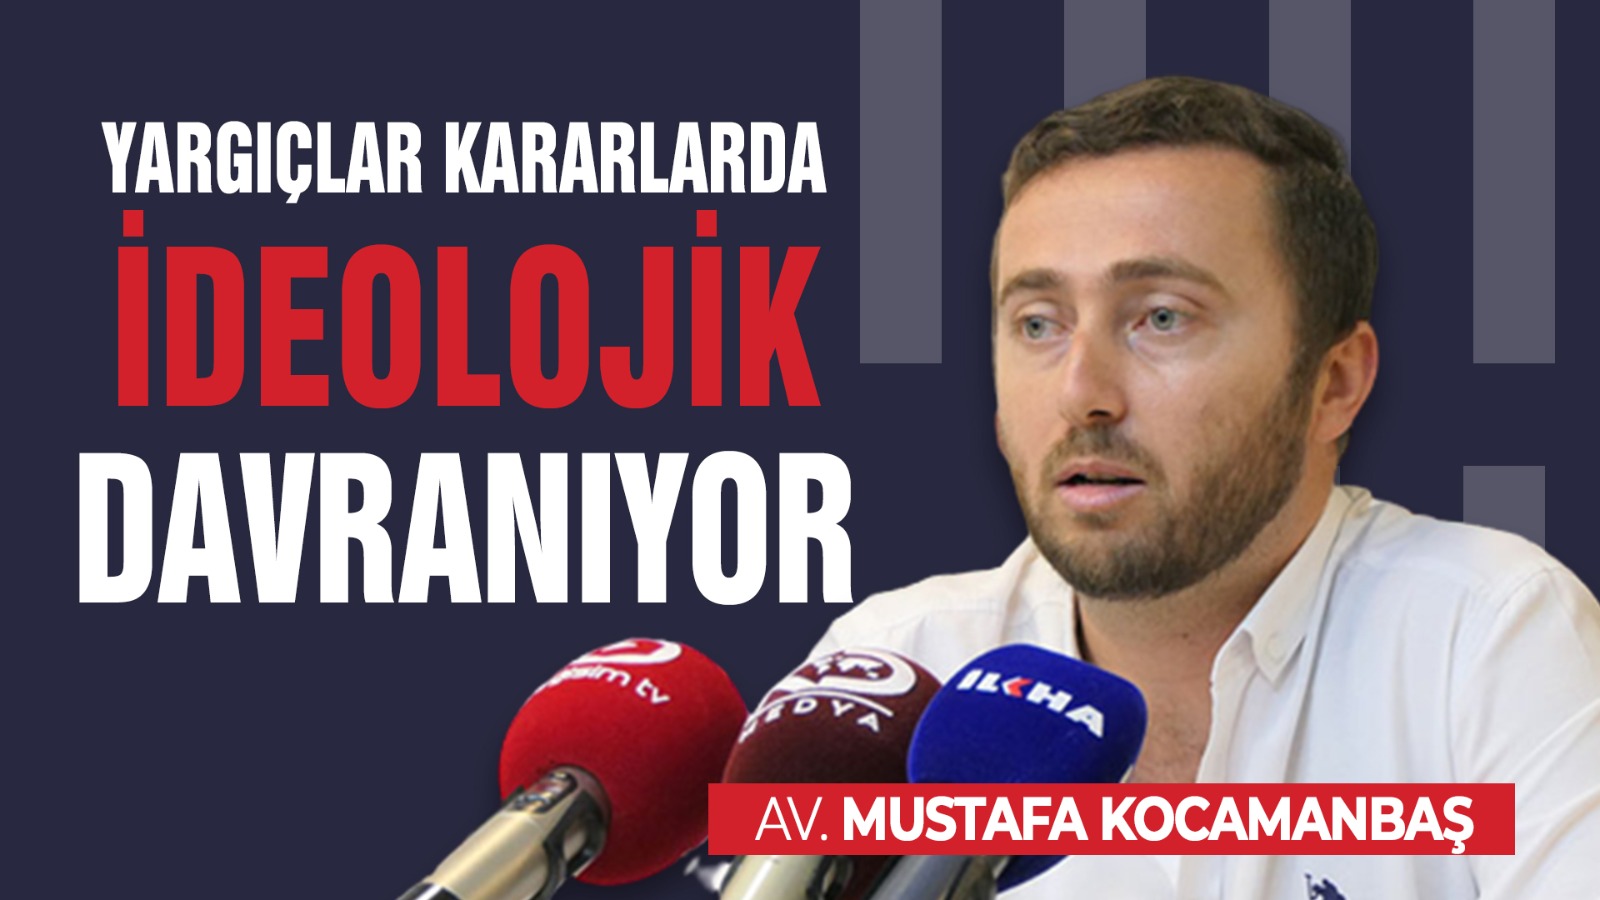 Av. Mustafa Kocamanbaş "Yargıçlar Hukuki Değil İdeolojik Davranıyor!"